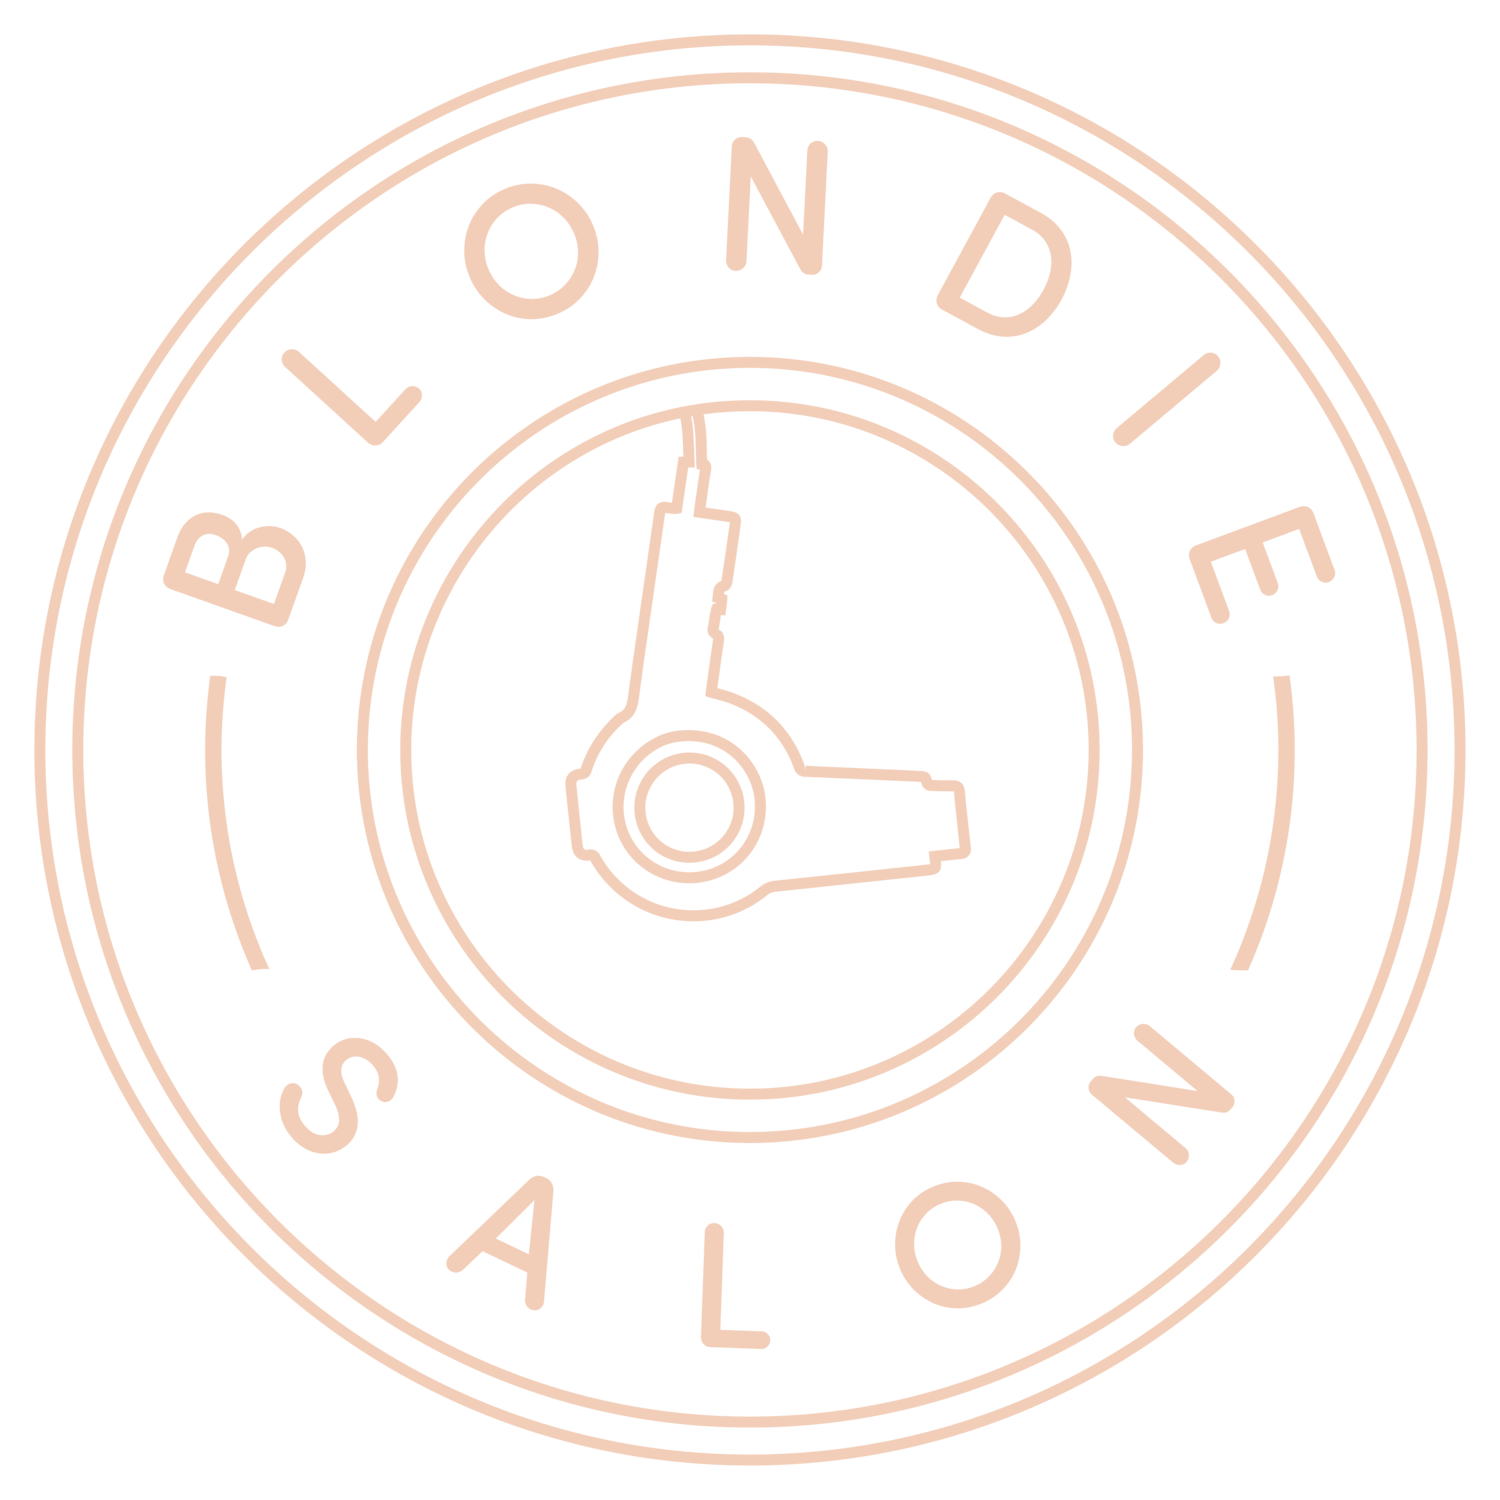 Blondie Salon